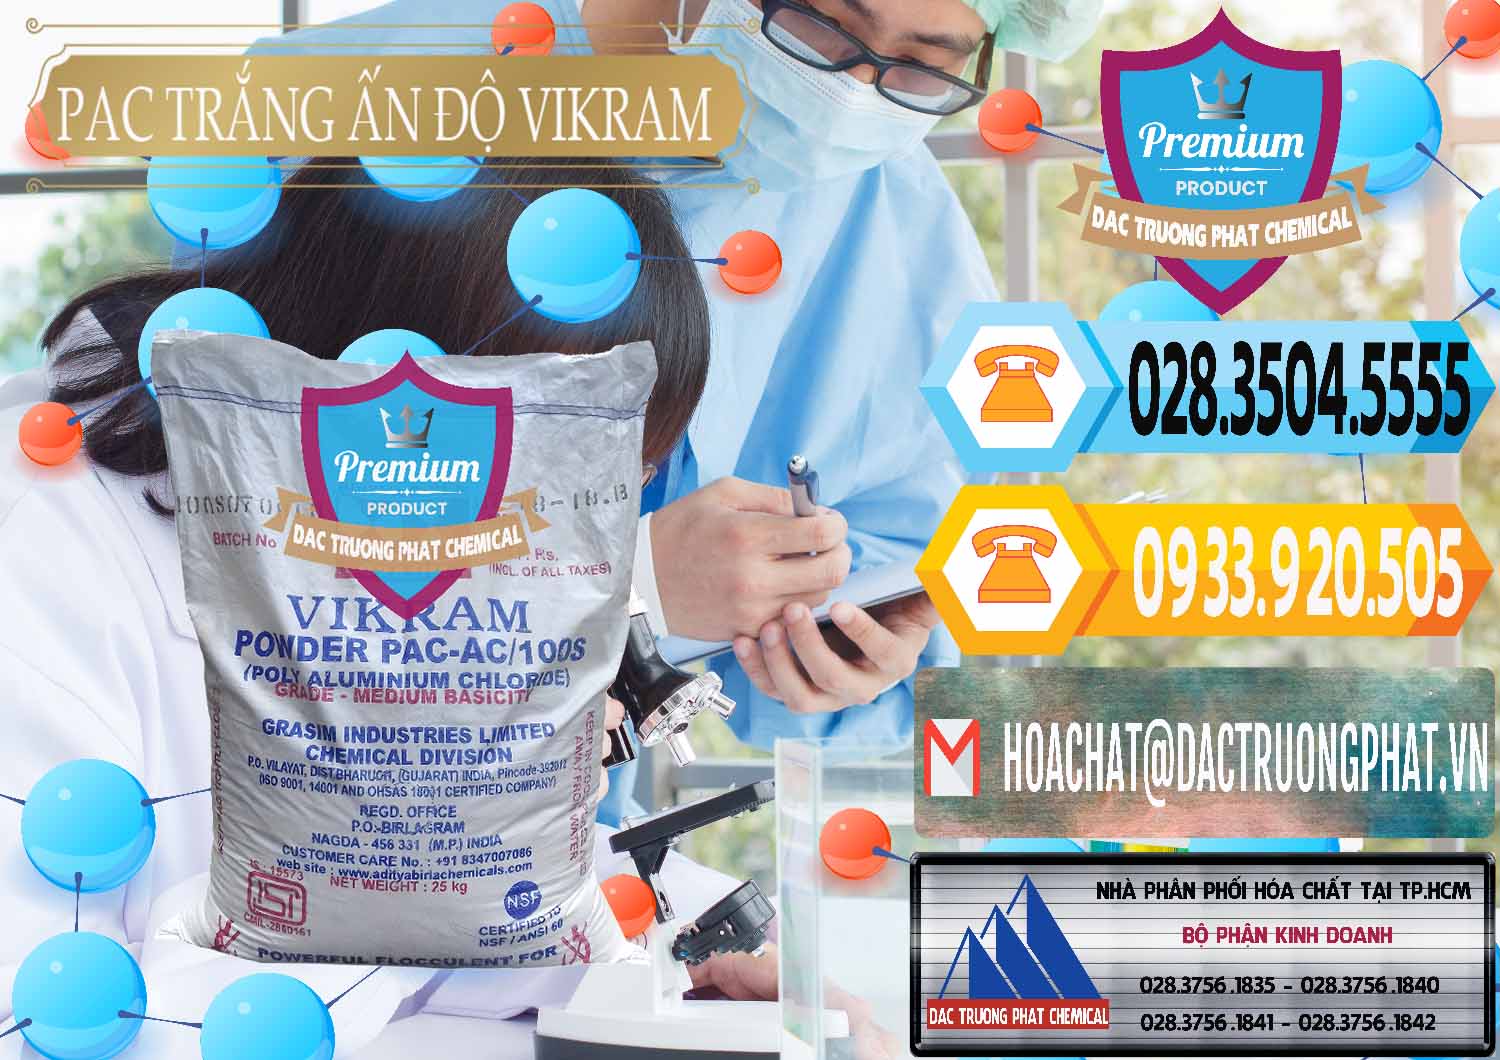 Nơi chuyên kinh doanh & bán PAC - Polyaluminium Chloride Ấn Độ India Vikram - 0120 - Đơn vị chuyên cung cấp & kinh doanh hóa chất tại TP.HCM - hoachattayrua.net